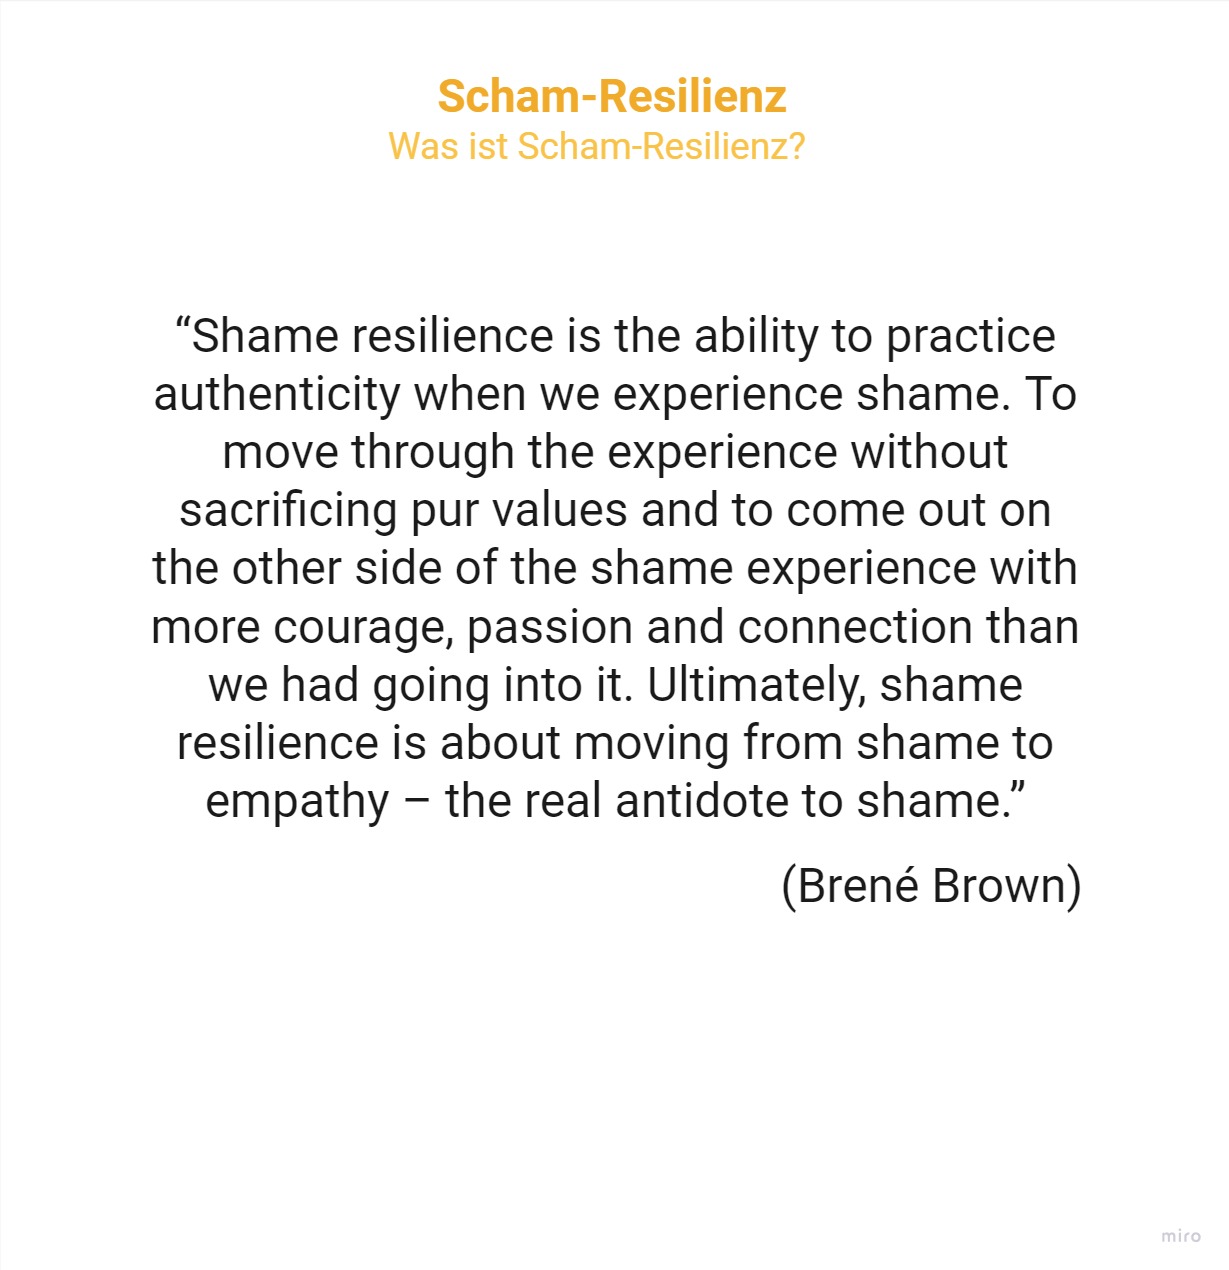 Zitat Scham-Resilienz nach Brene Brown